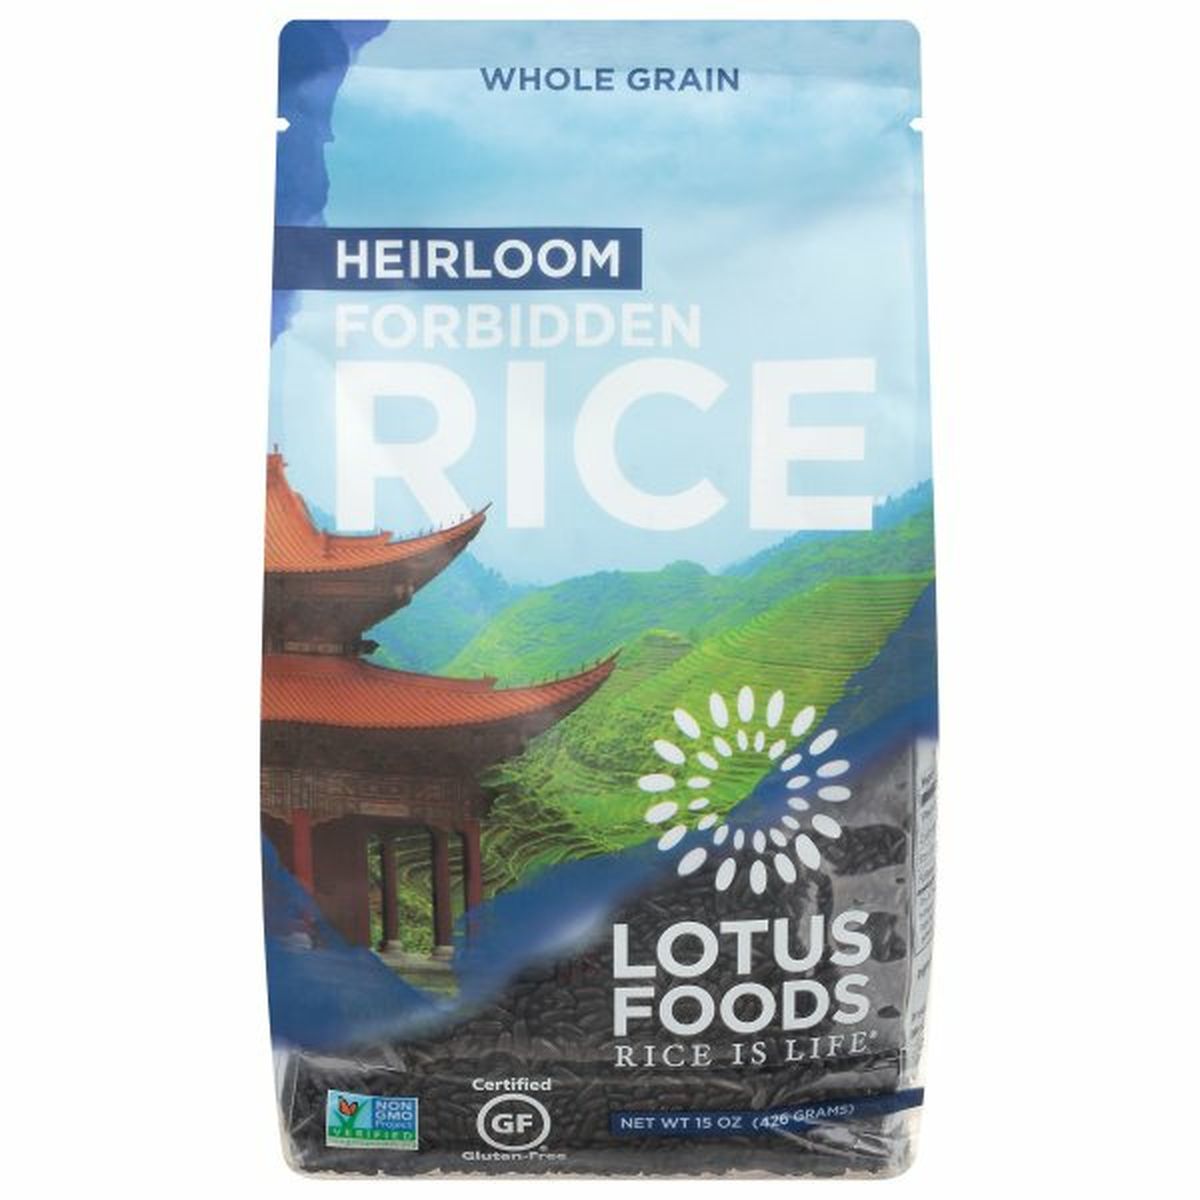 Calories in Lotus Foods Rice, Forbidden, Heirloom